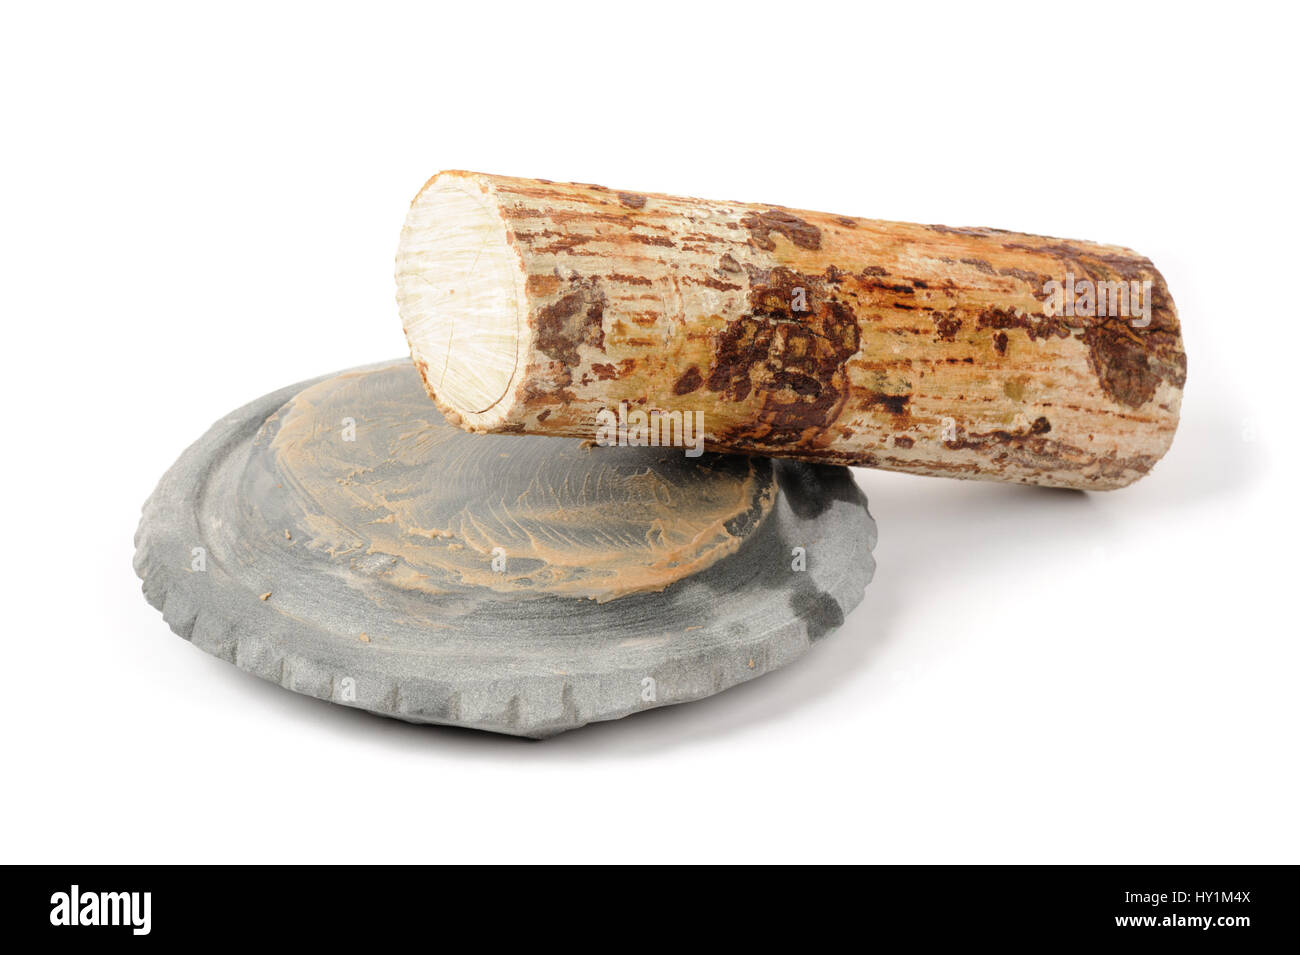 Thanaka wood and Kyauk pyin stone slab isolated on white background Stock Photo